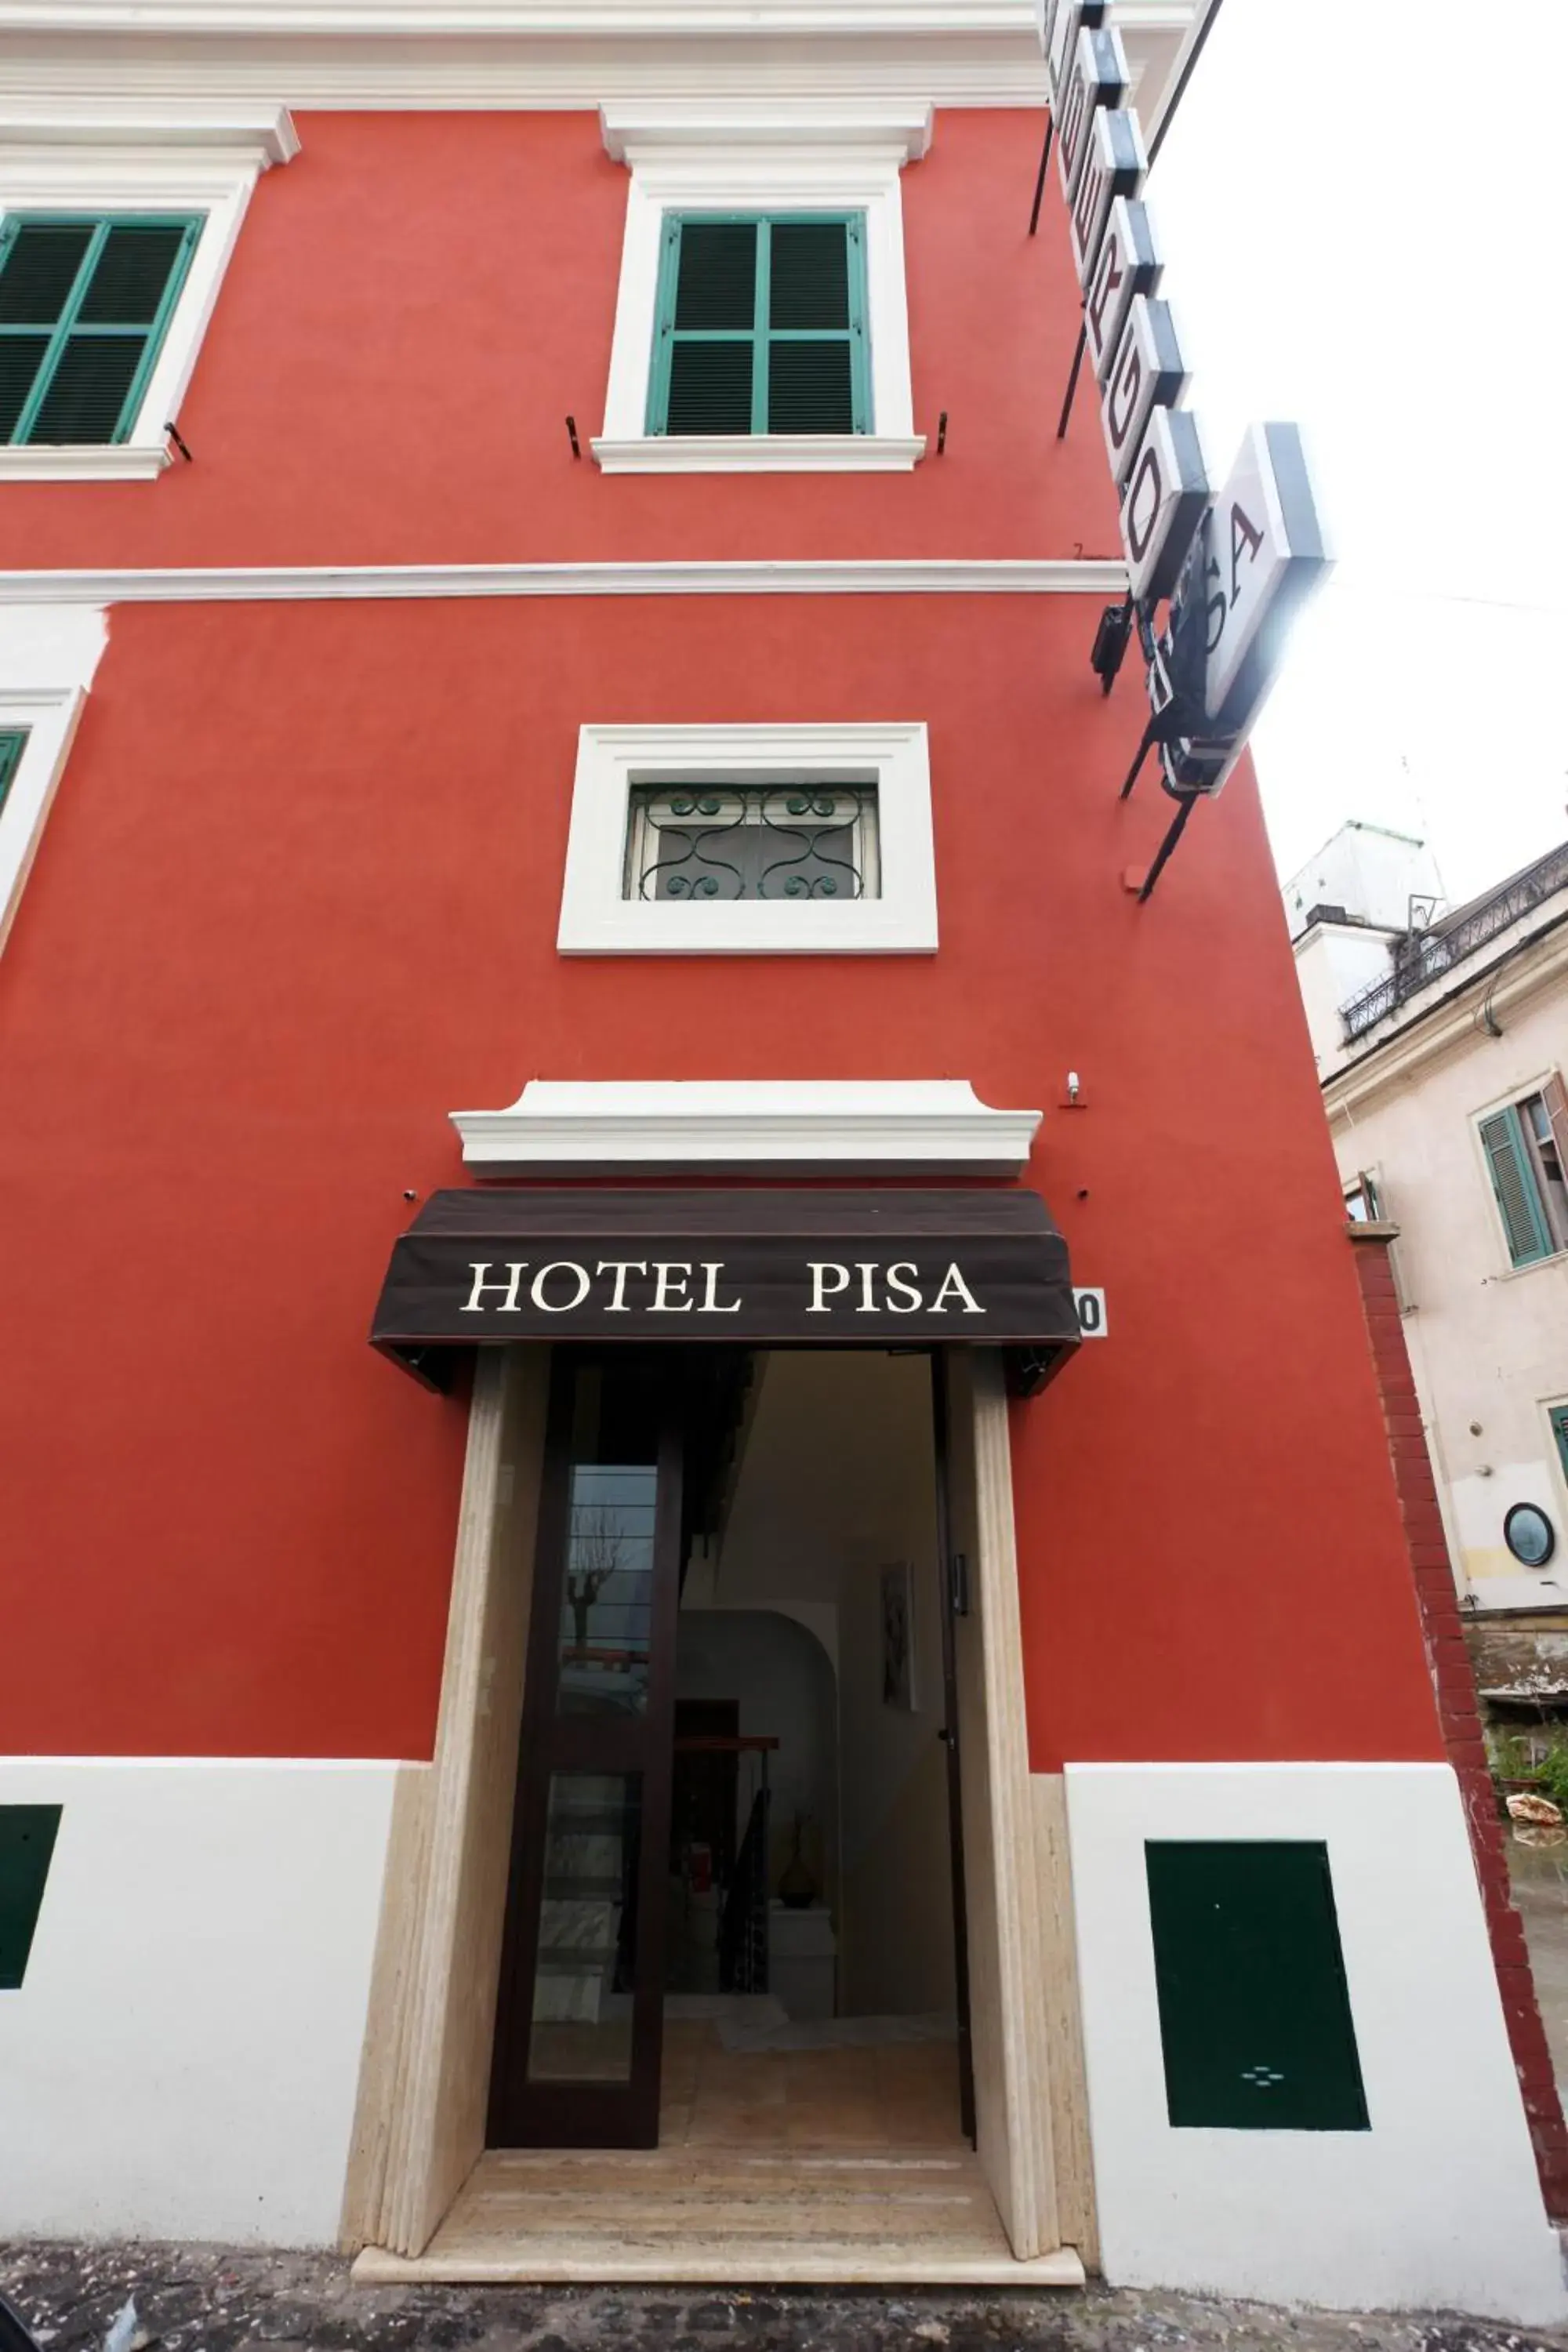 Facade/entrance, Property Building in Hotel Pisa